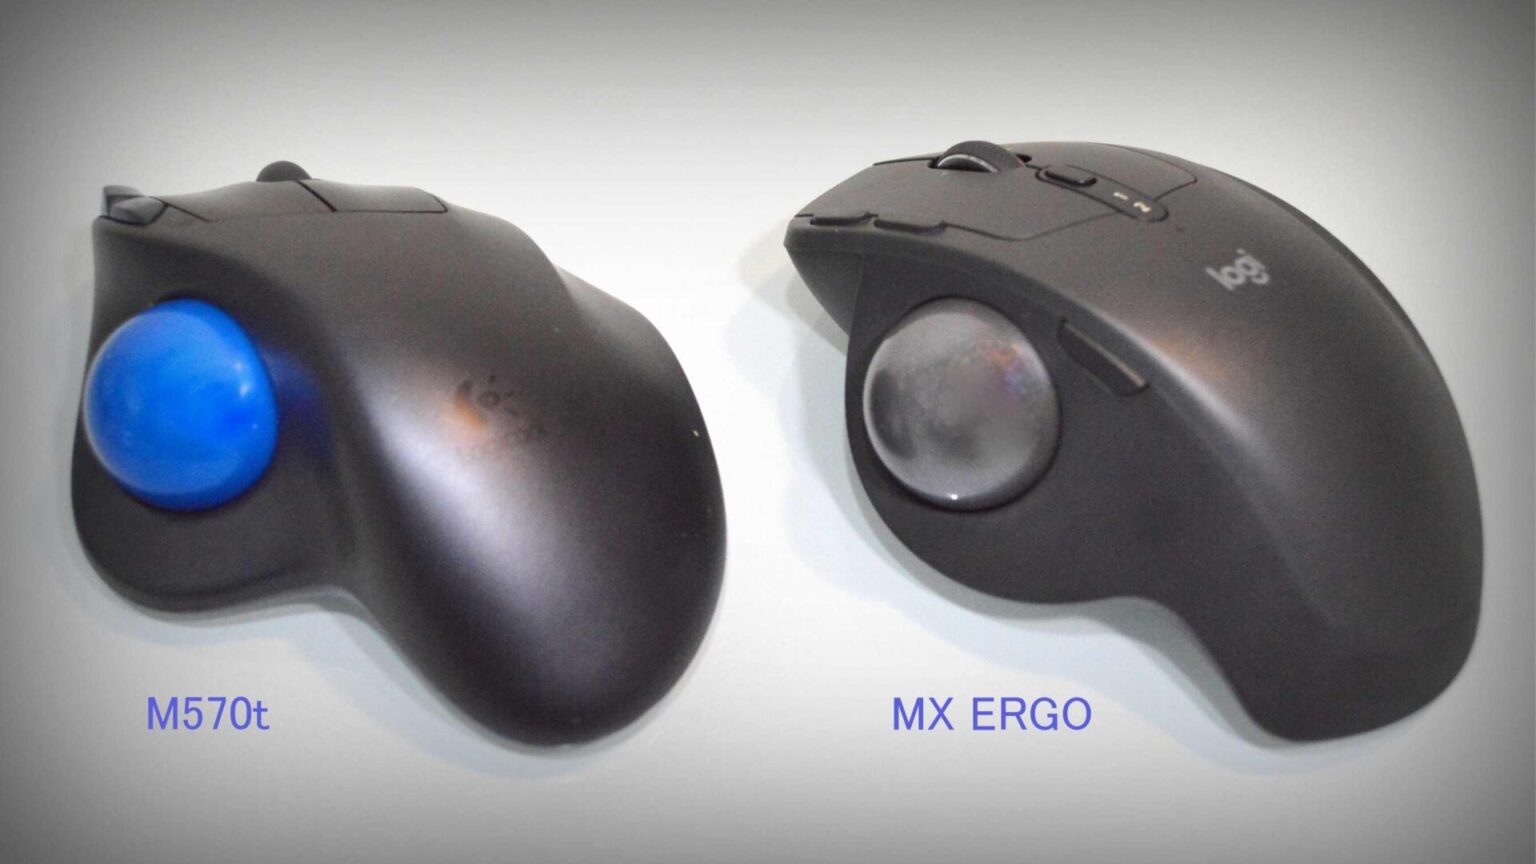 【長期レビュー】MX ERGO(MXTB1s)は現状最強のトラボだ。 | Rankman.net